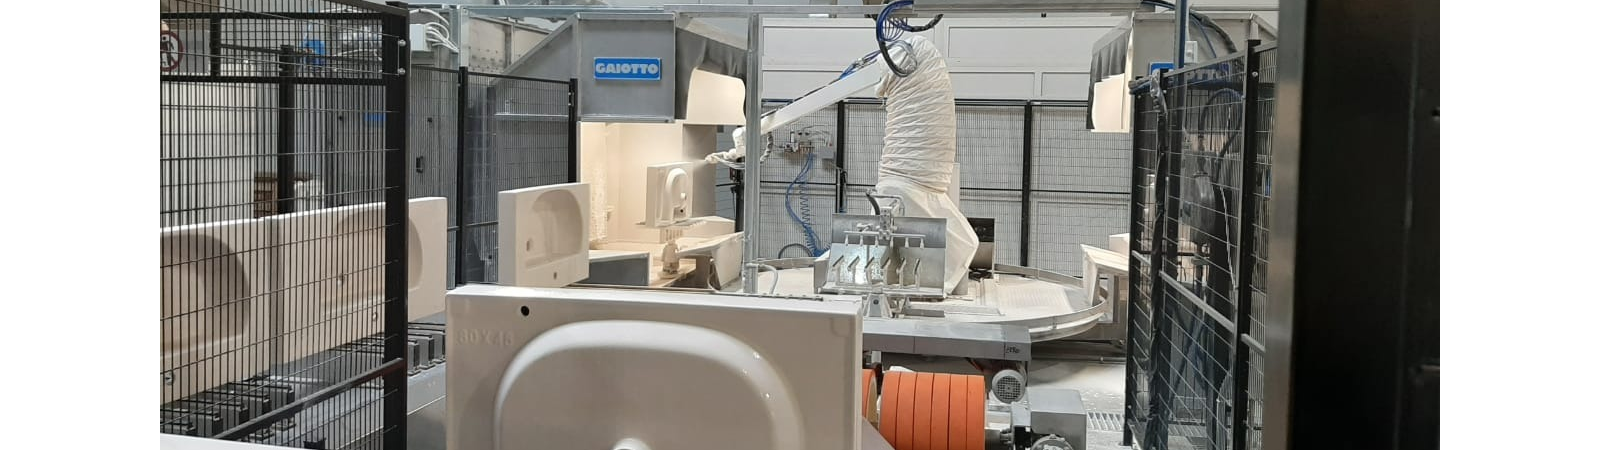 Kerama Marazzi, esmaltado robotizado Gaiotto para entrar a lo grande en el sanitario